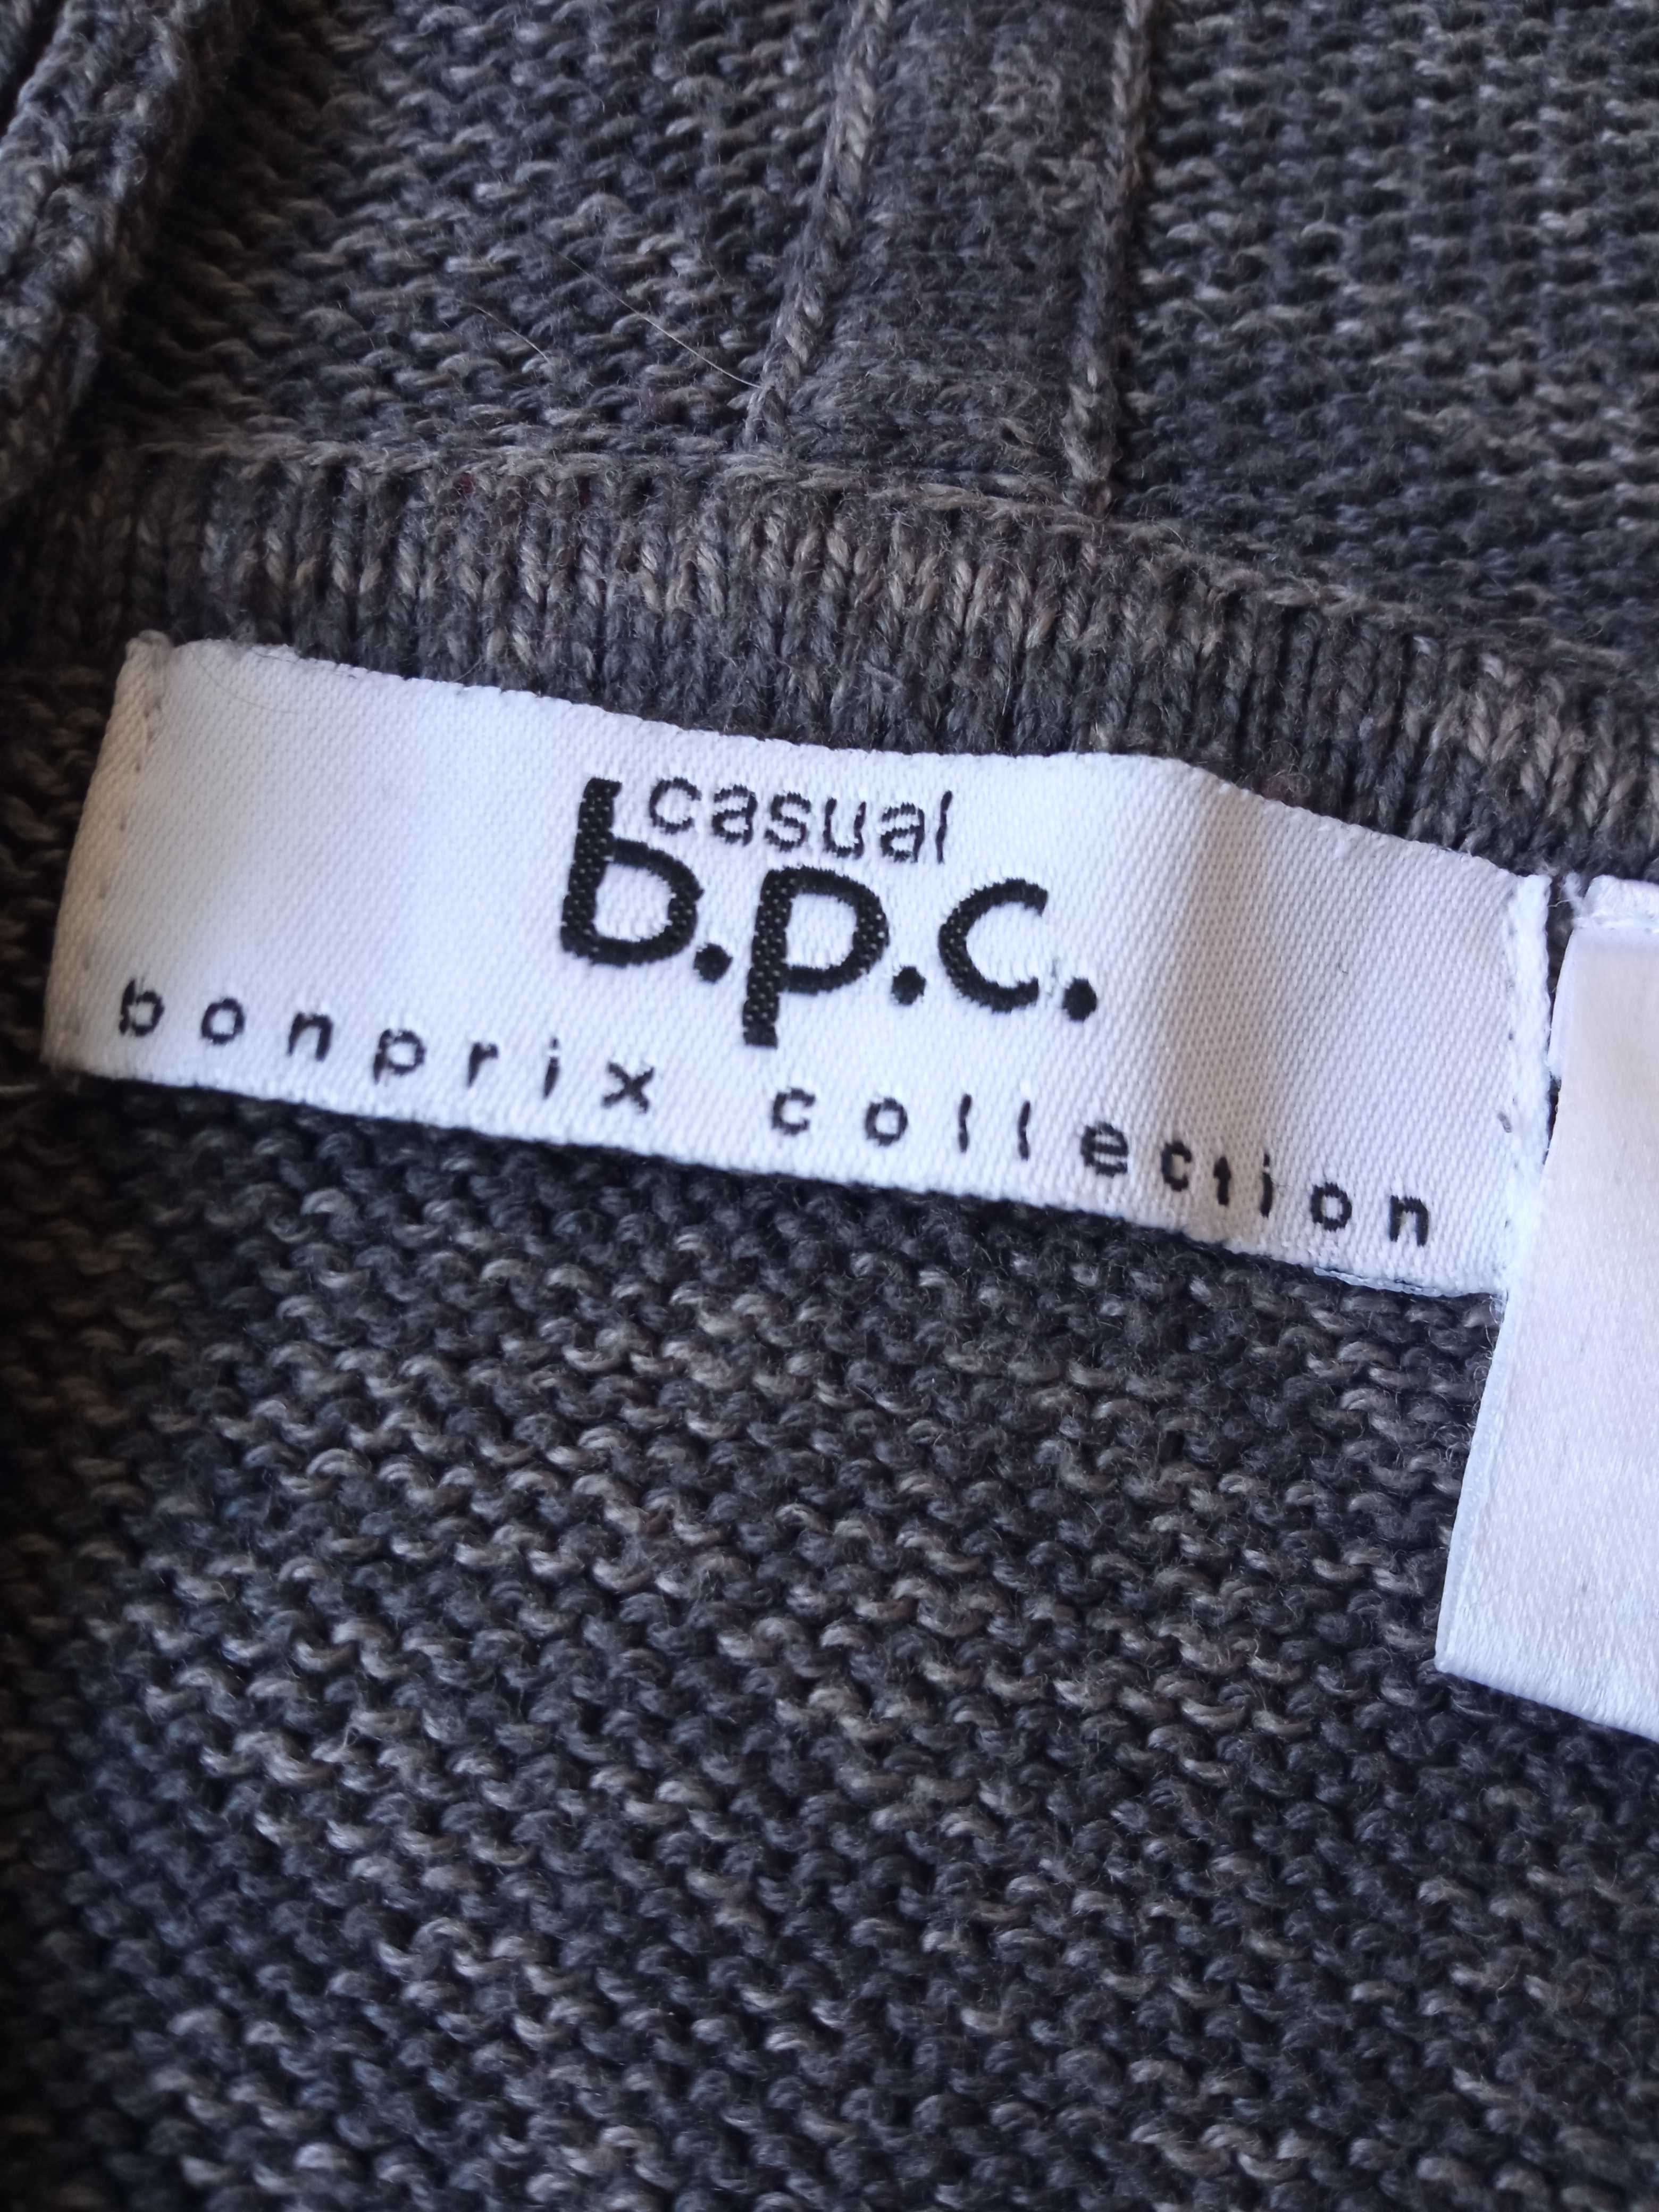 Bonprix ciepły damski sweter bluza bawełna r 44/46